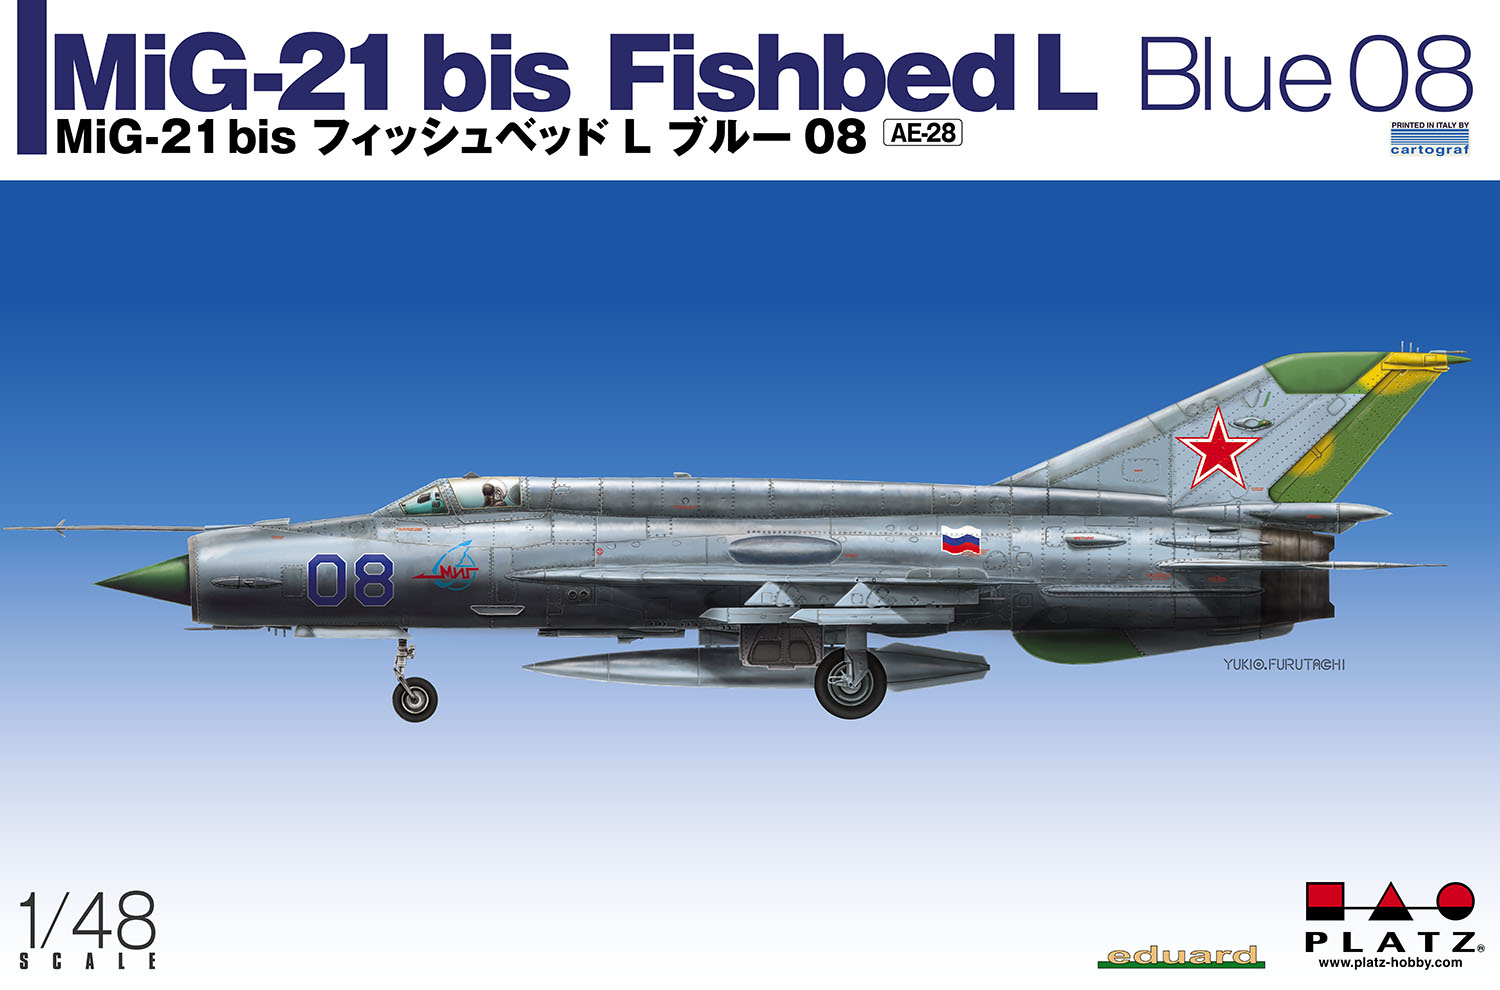 1/48 MiG-21 bis フィッシュベッド L ブルー 08 [AE-28] - 6,072円 